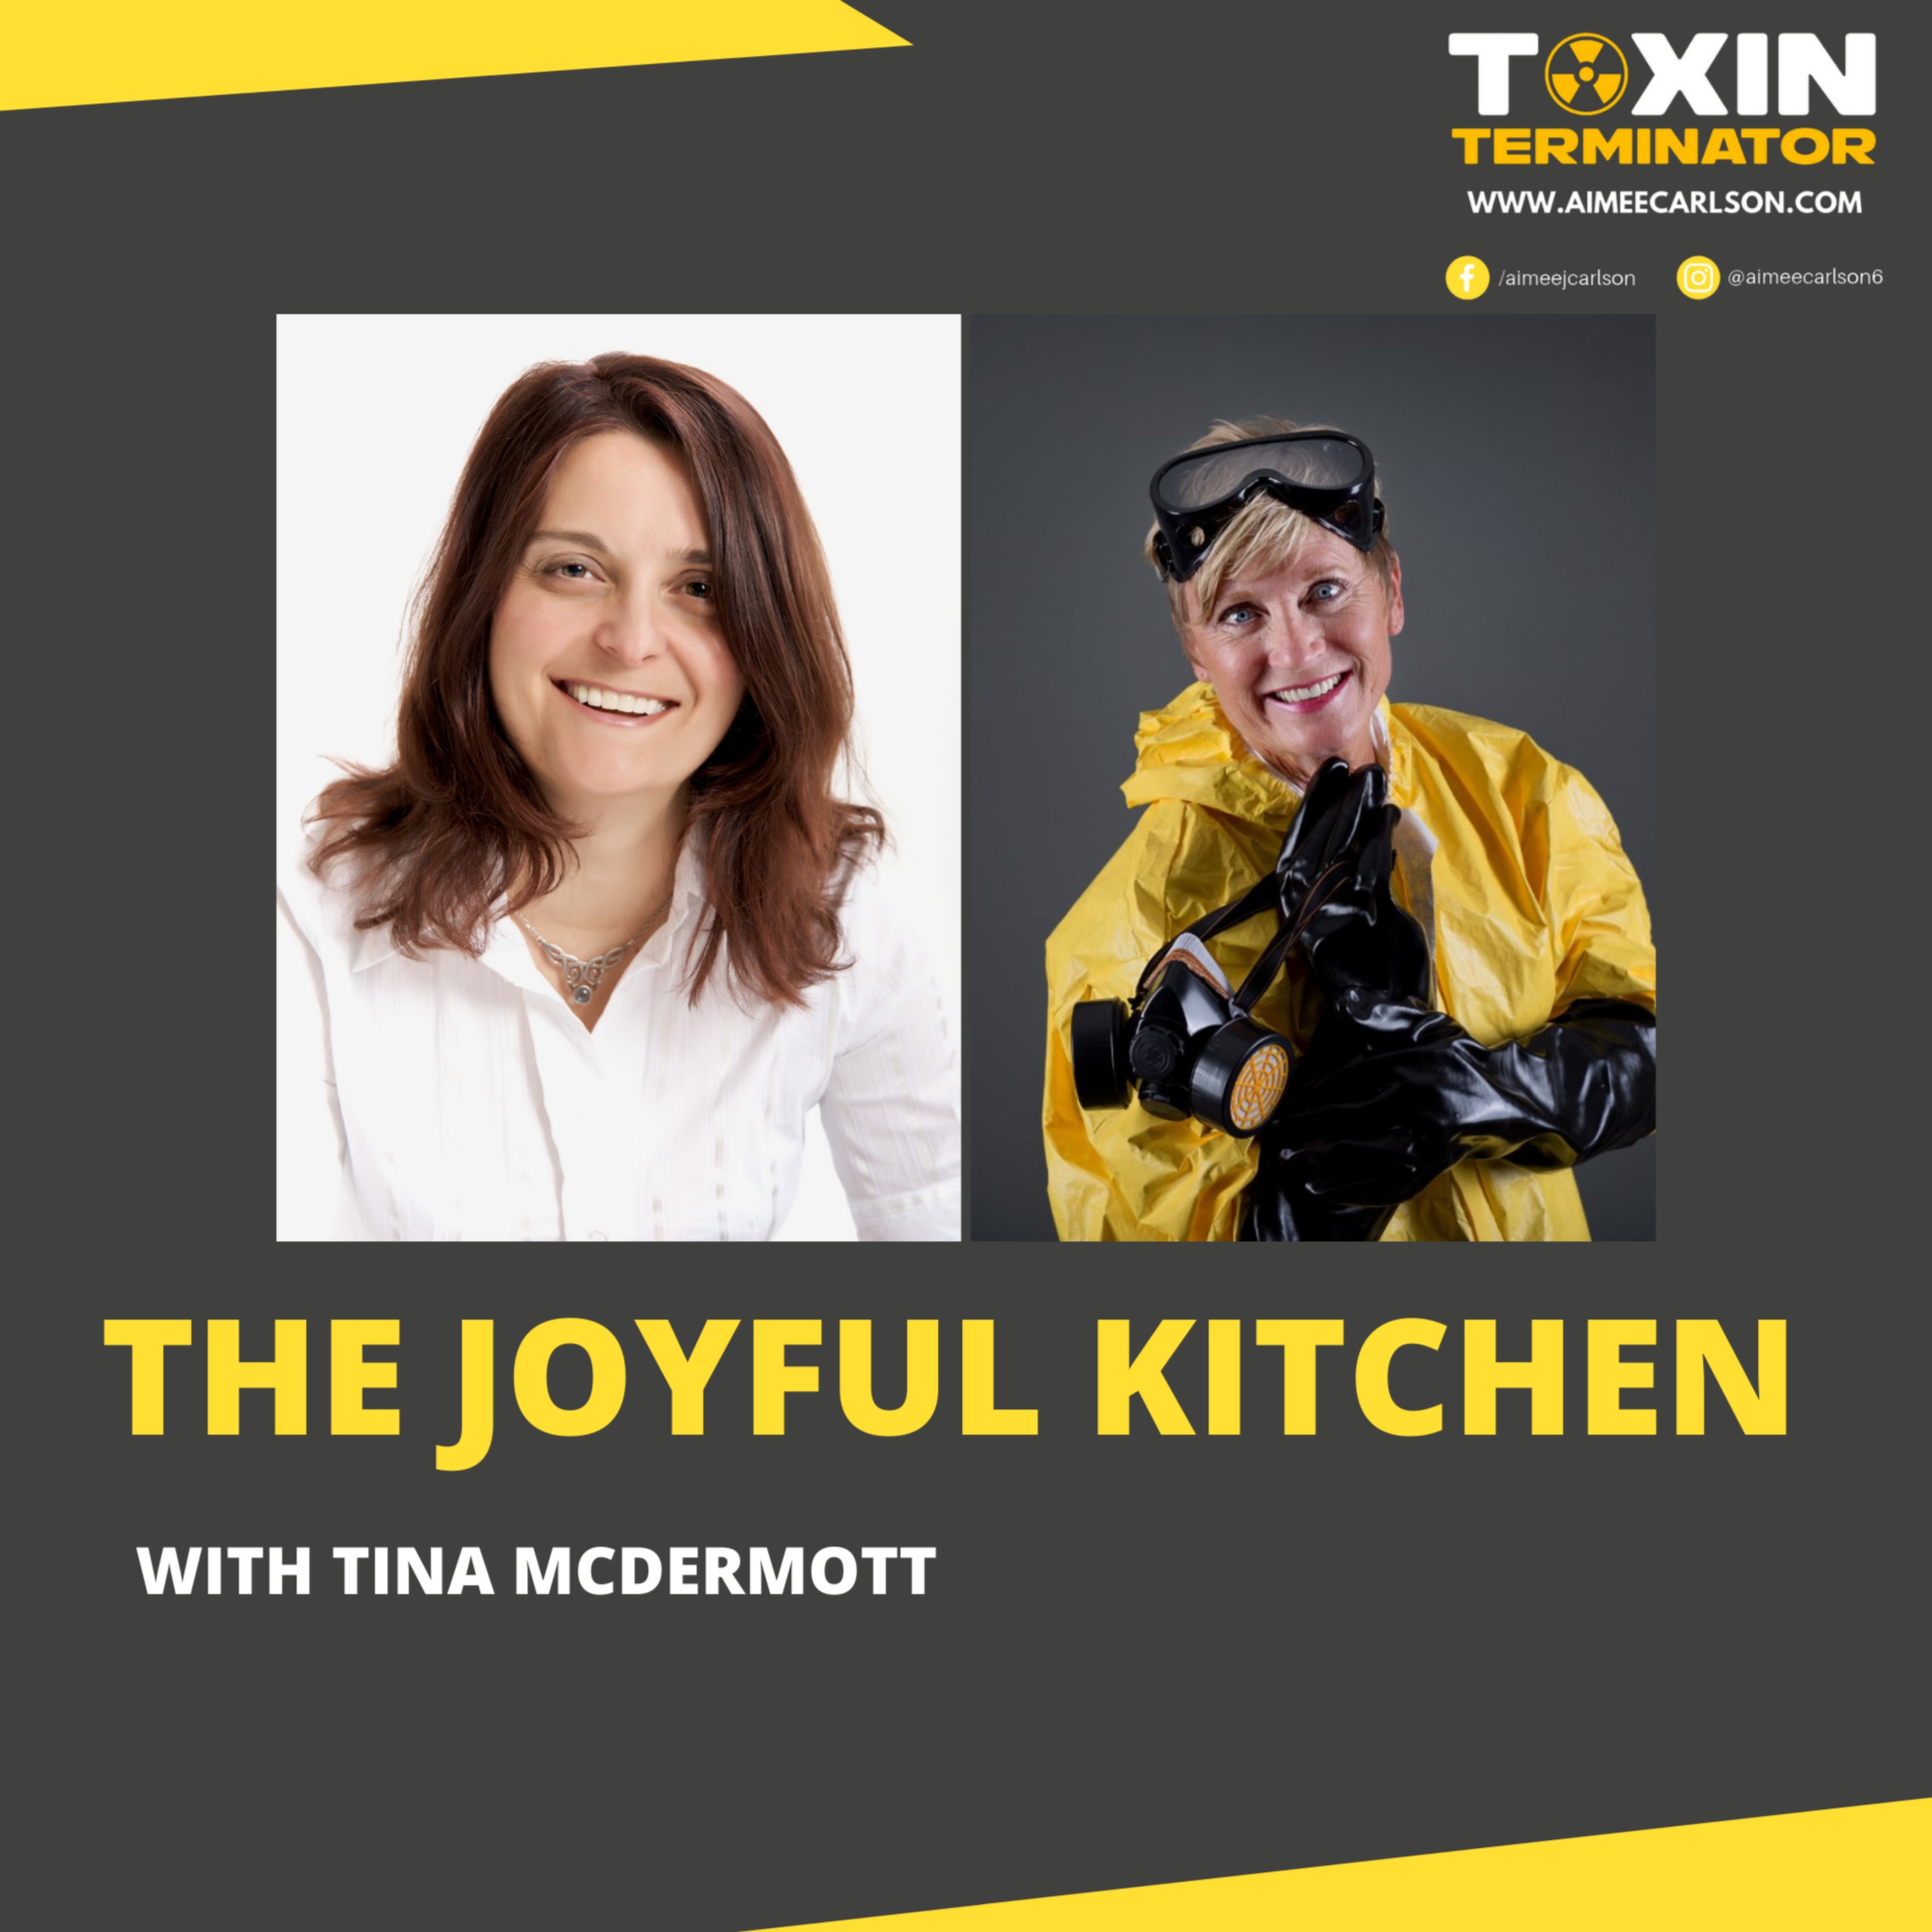 The Joyful Kitchen with Tina McDermott